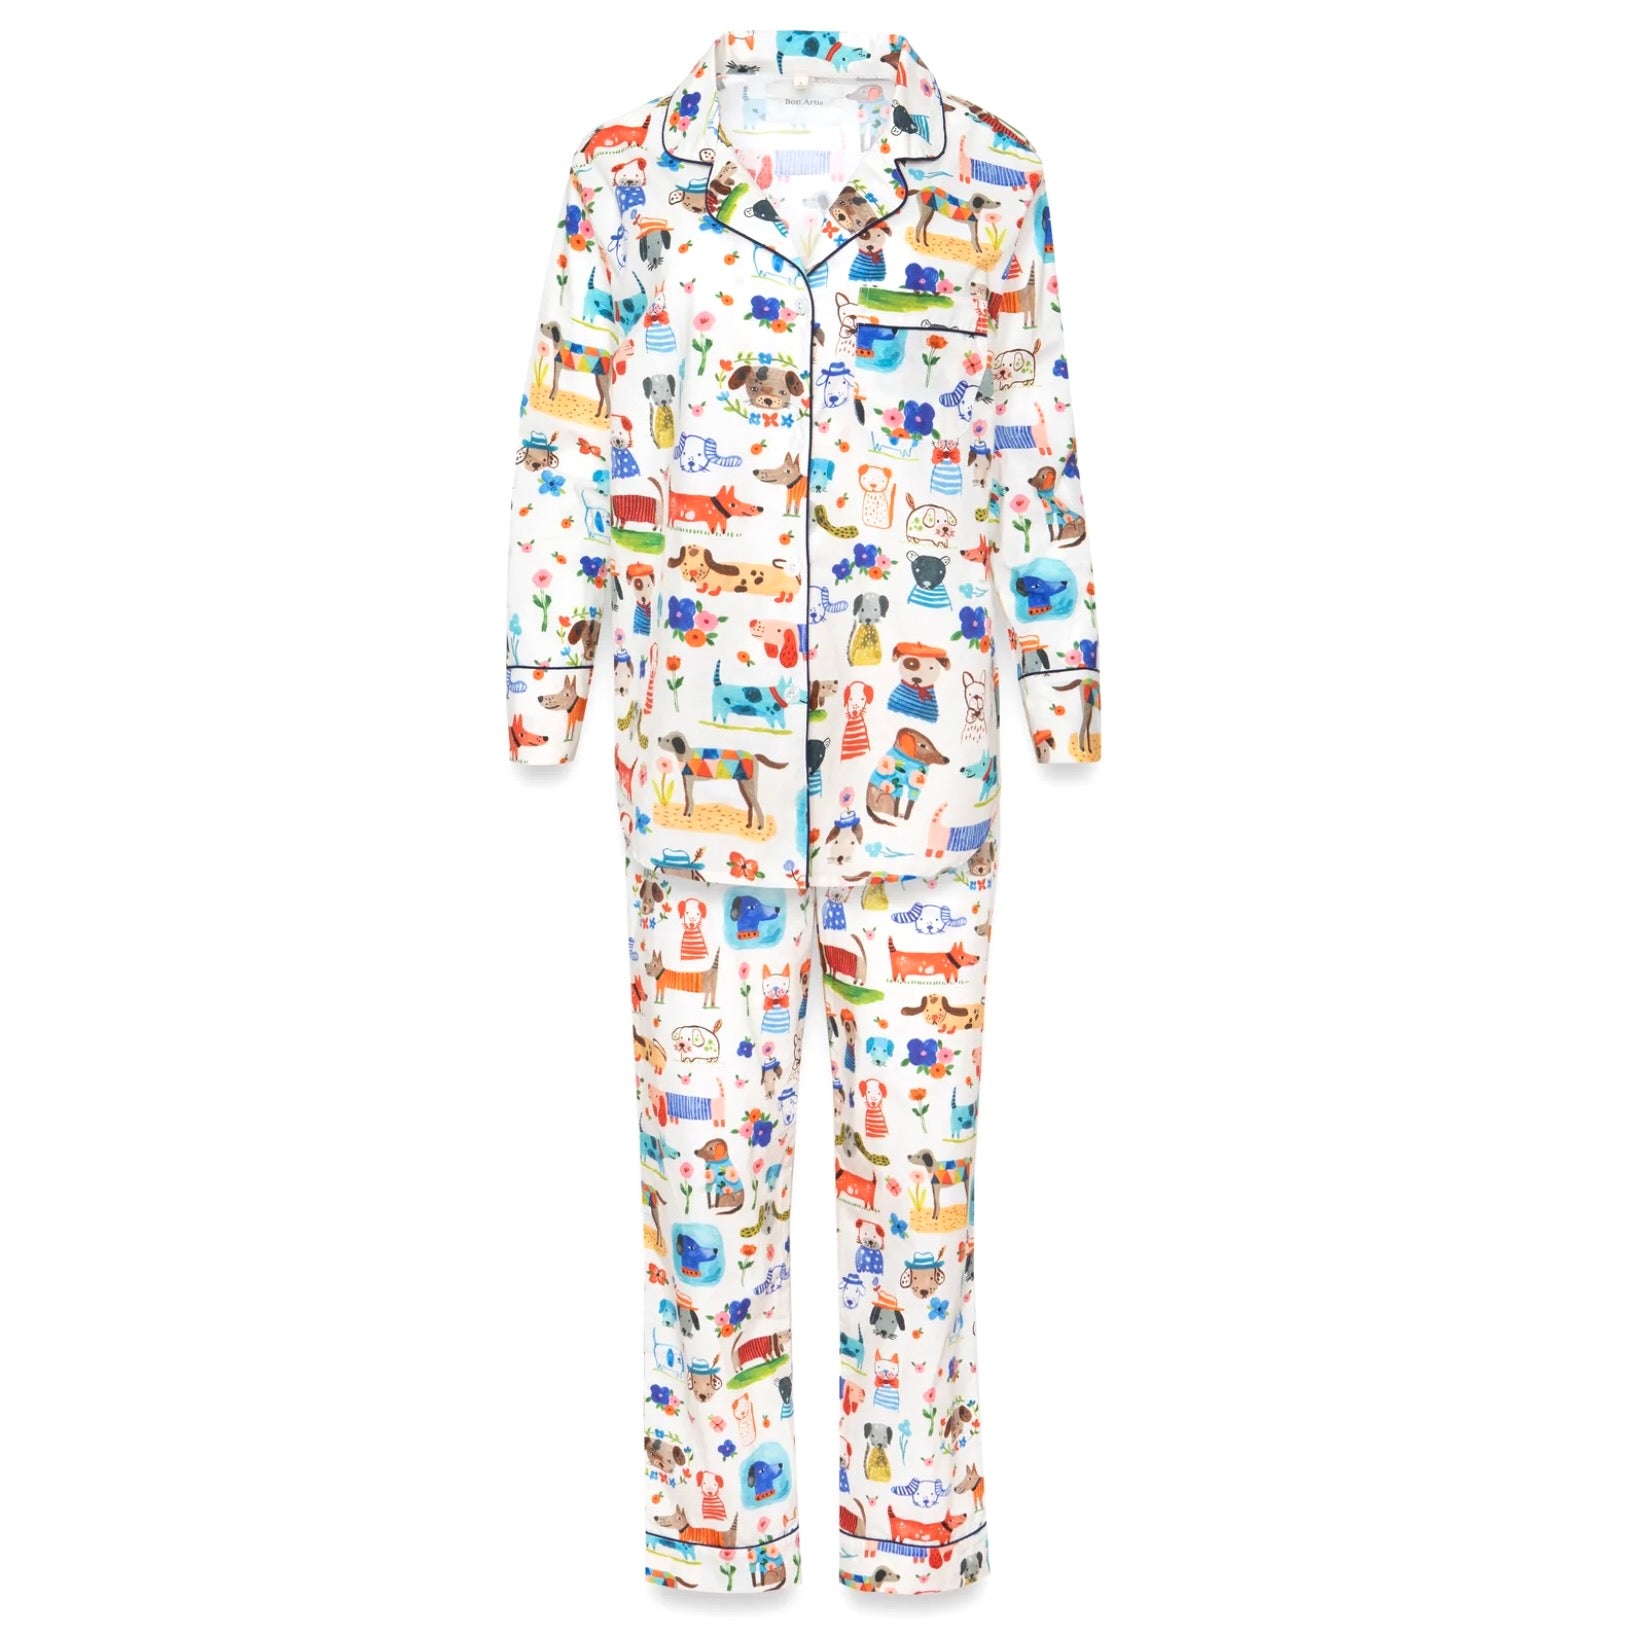 Bon Artis Pajamas